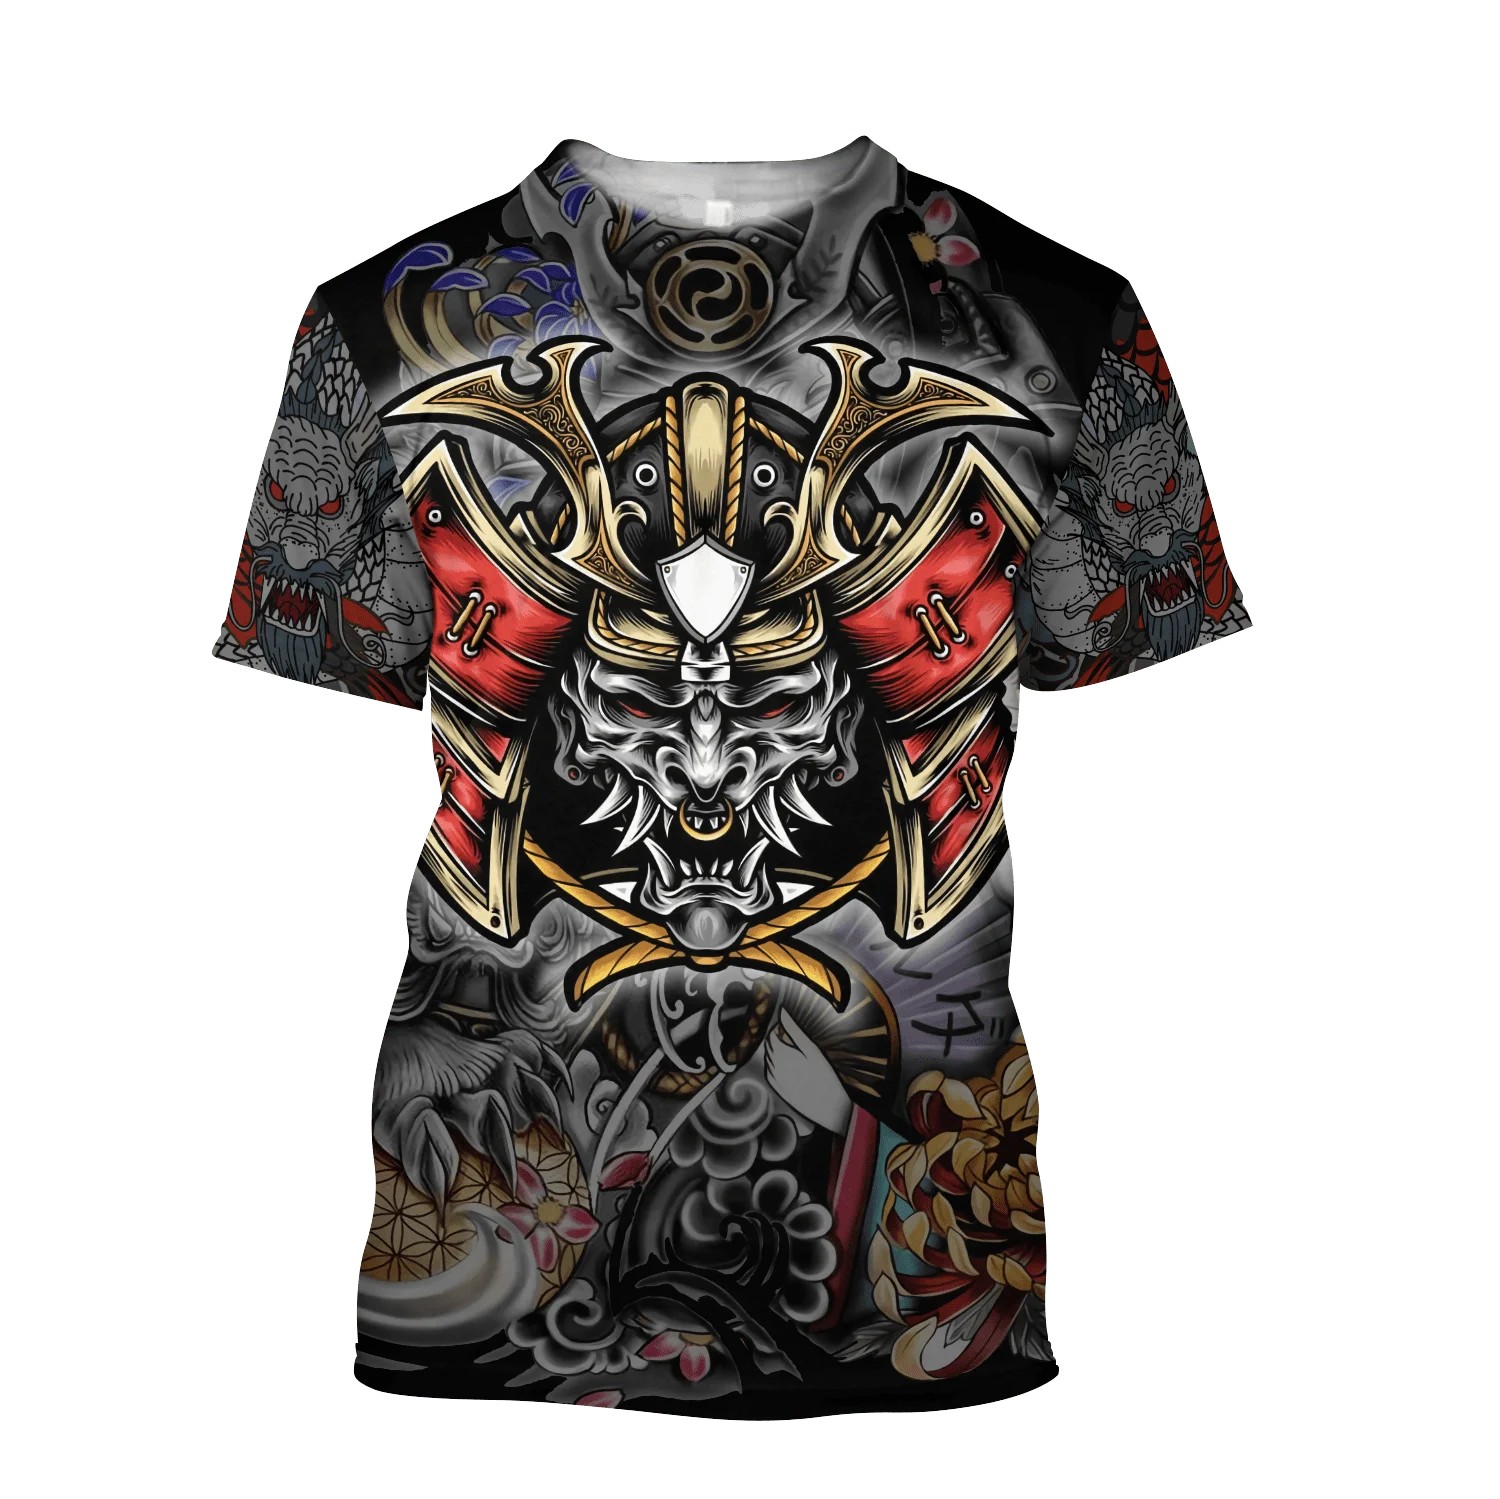 

Мужская футболка с 3d-рисунком самурая тату, стильная ретро модная рубашка унисекс с коротким рукавом, лето 2023